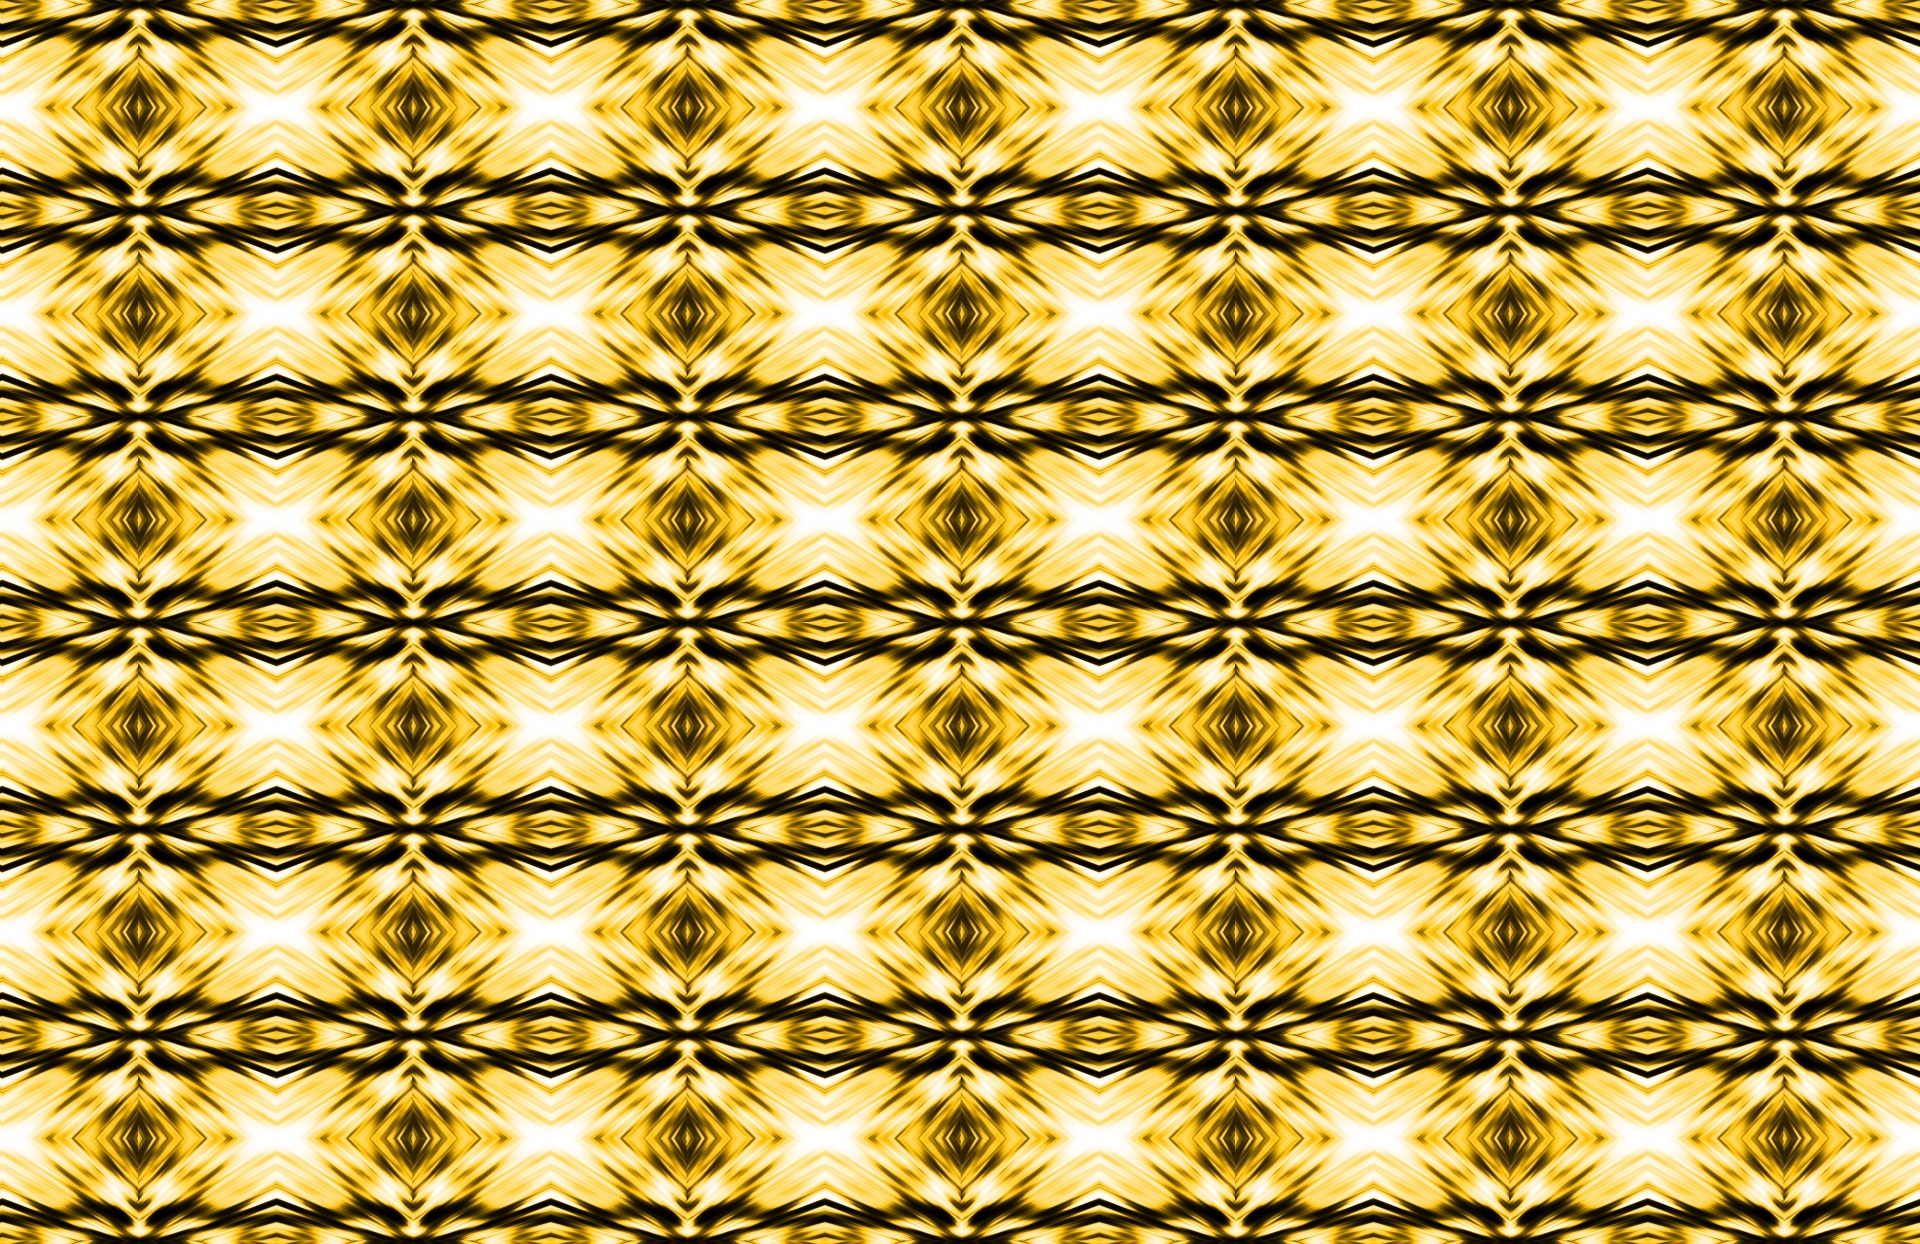 repeat pattern diamond shape free photo